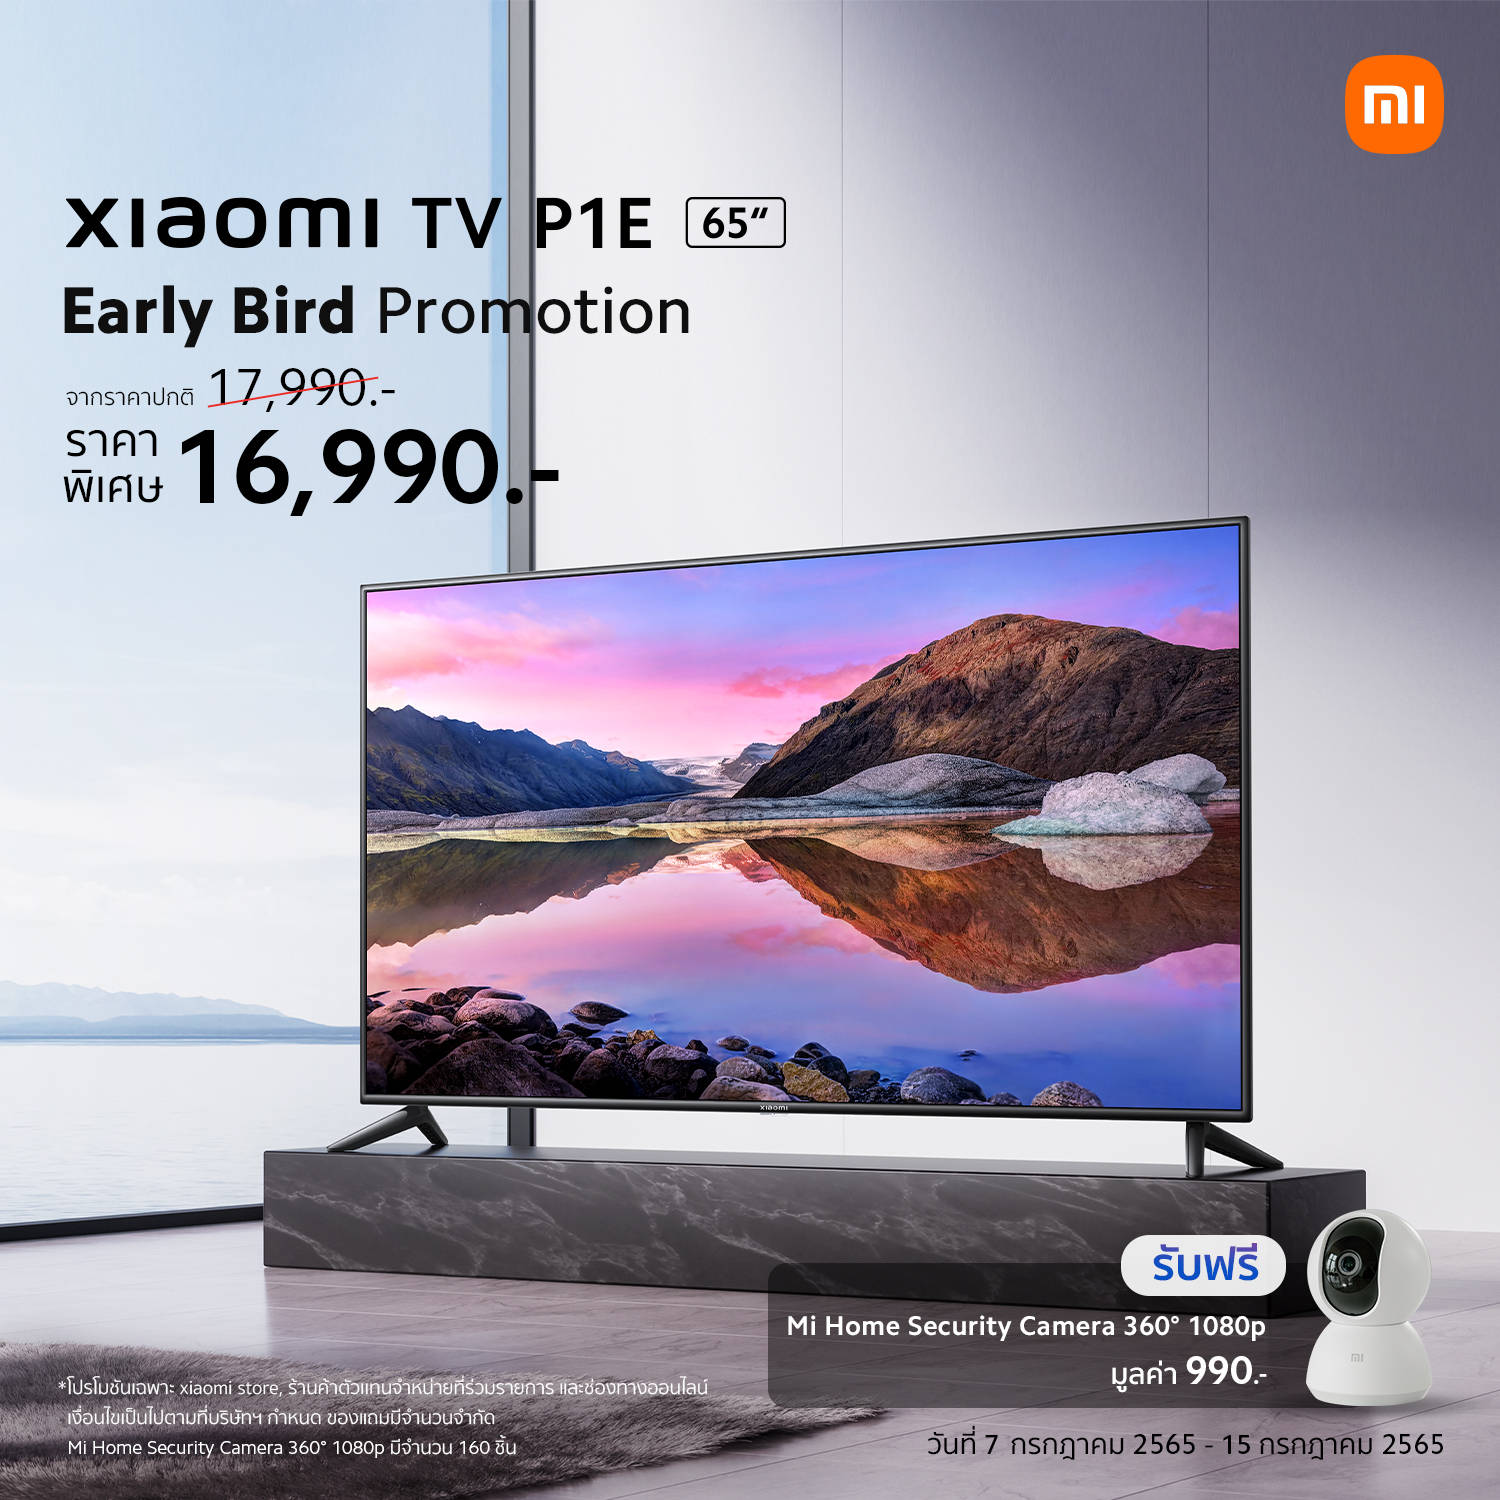 Xiaomi TV P1E 65” Sale Poster